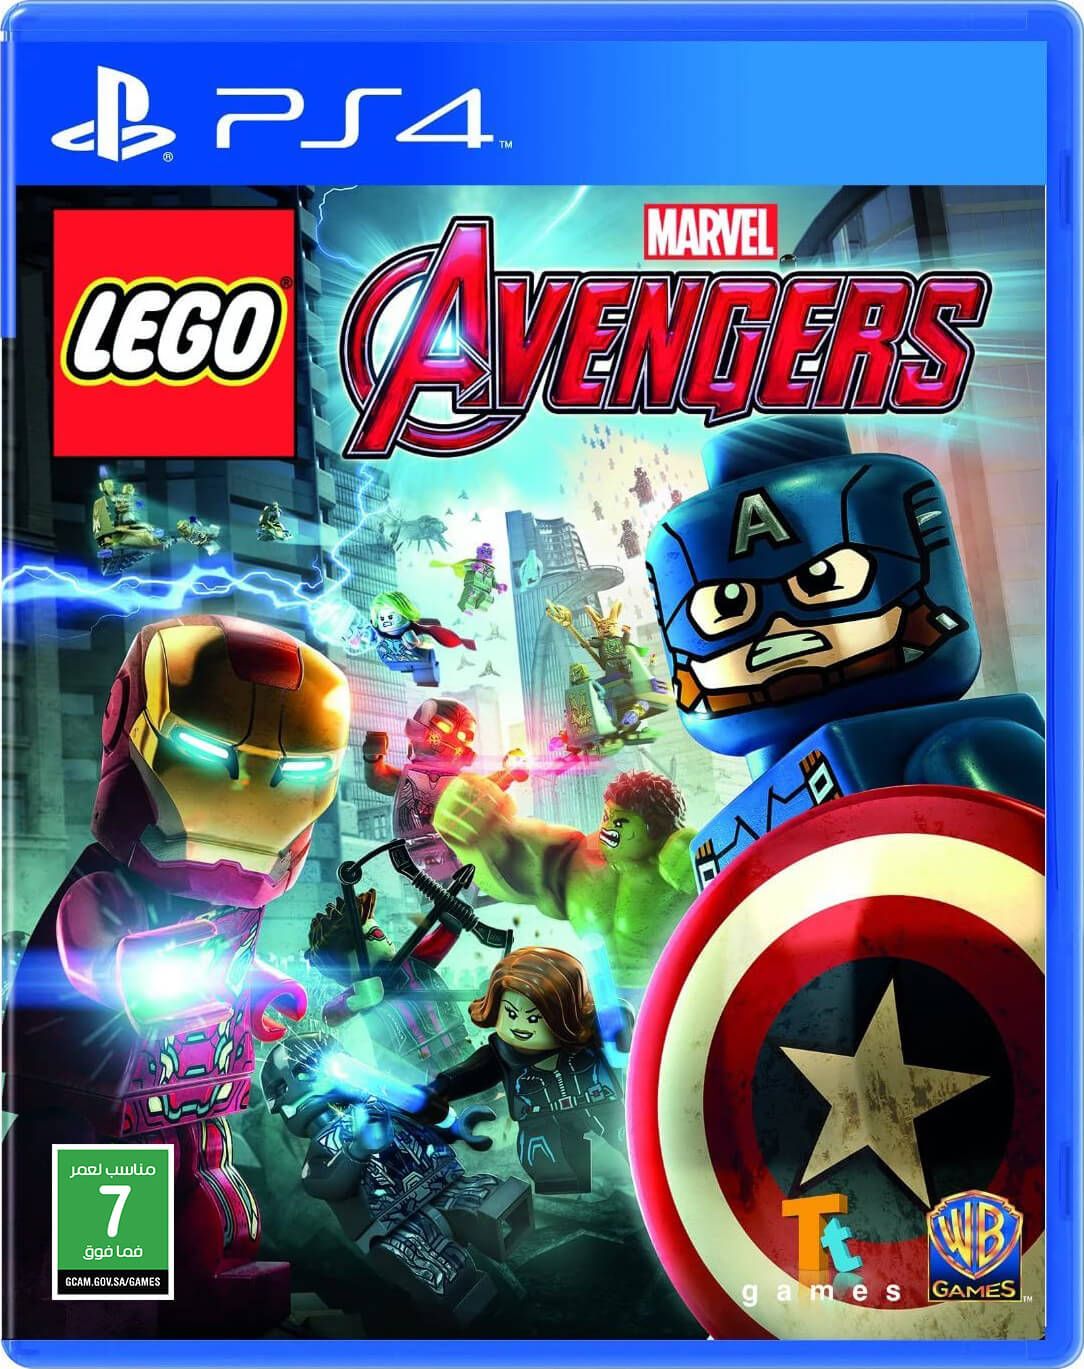 LEGO: Marvel Avengers PS4 (New)